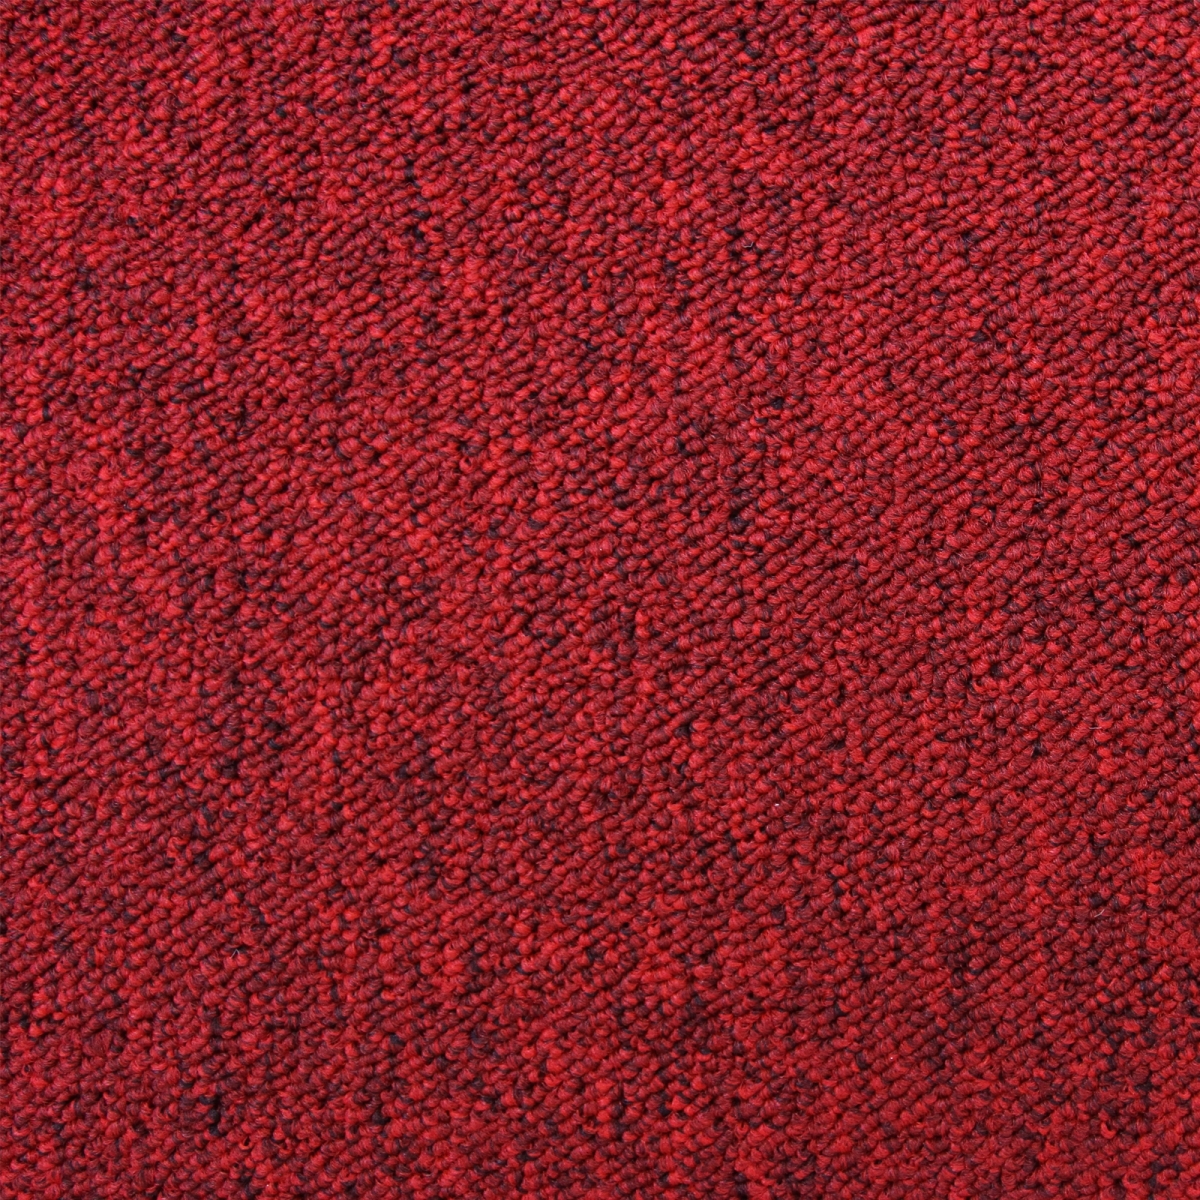 Moquette Monstershop Dalle de Moquette Ultra-Résistant Couleur Rouge Ecarlate pour Usage Professionnel, Paquet de 20 Dalles de 50cm x 50cm (Superficie de 5m²)